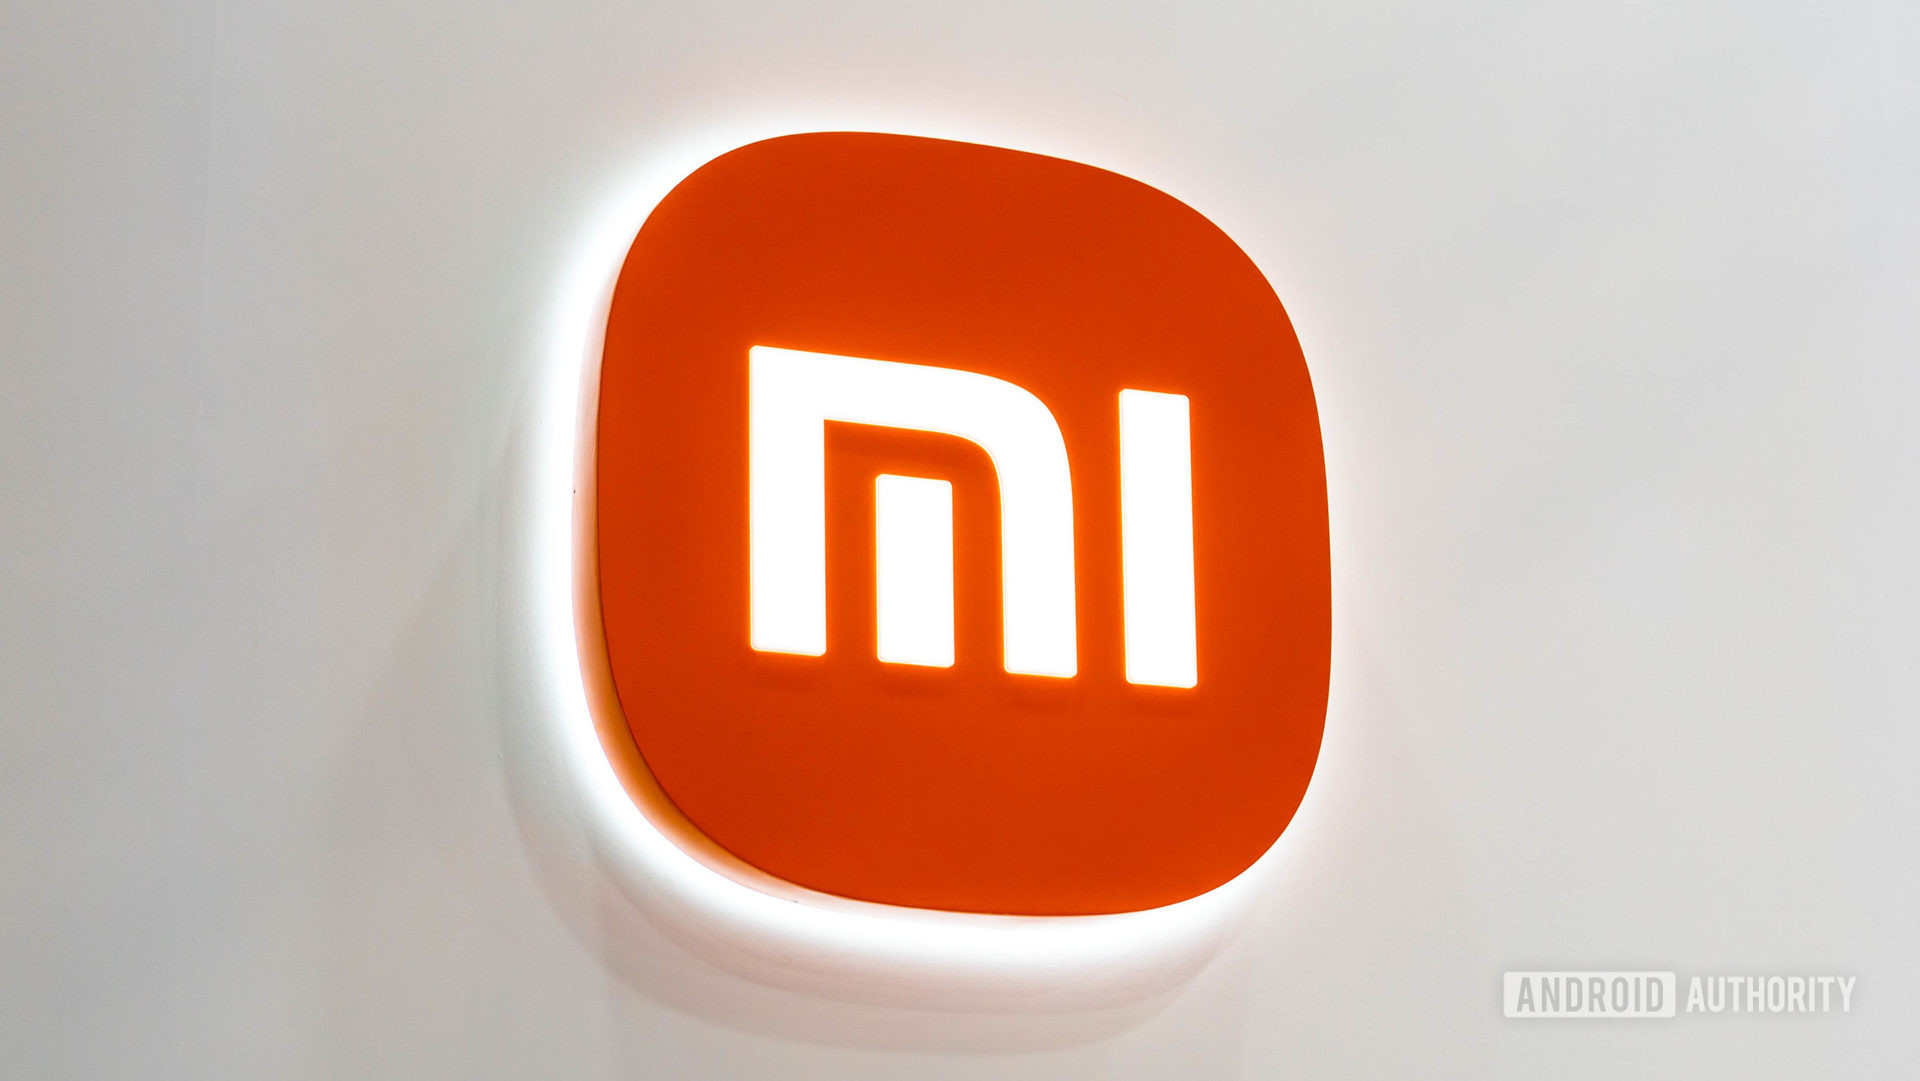 Logotipo de Xiaomi Mi en la pared blanca